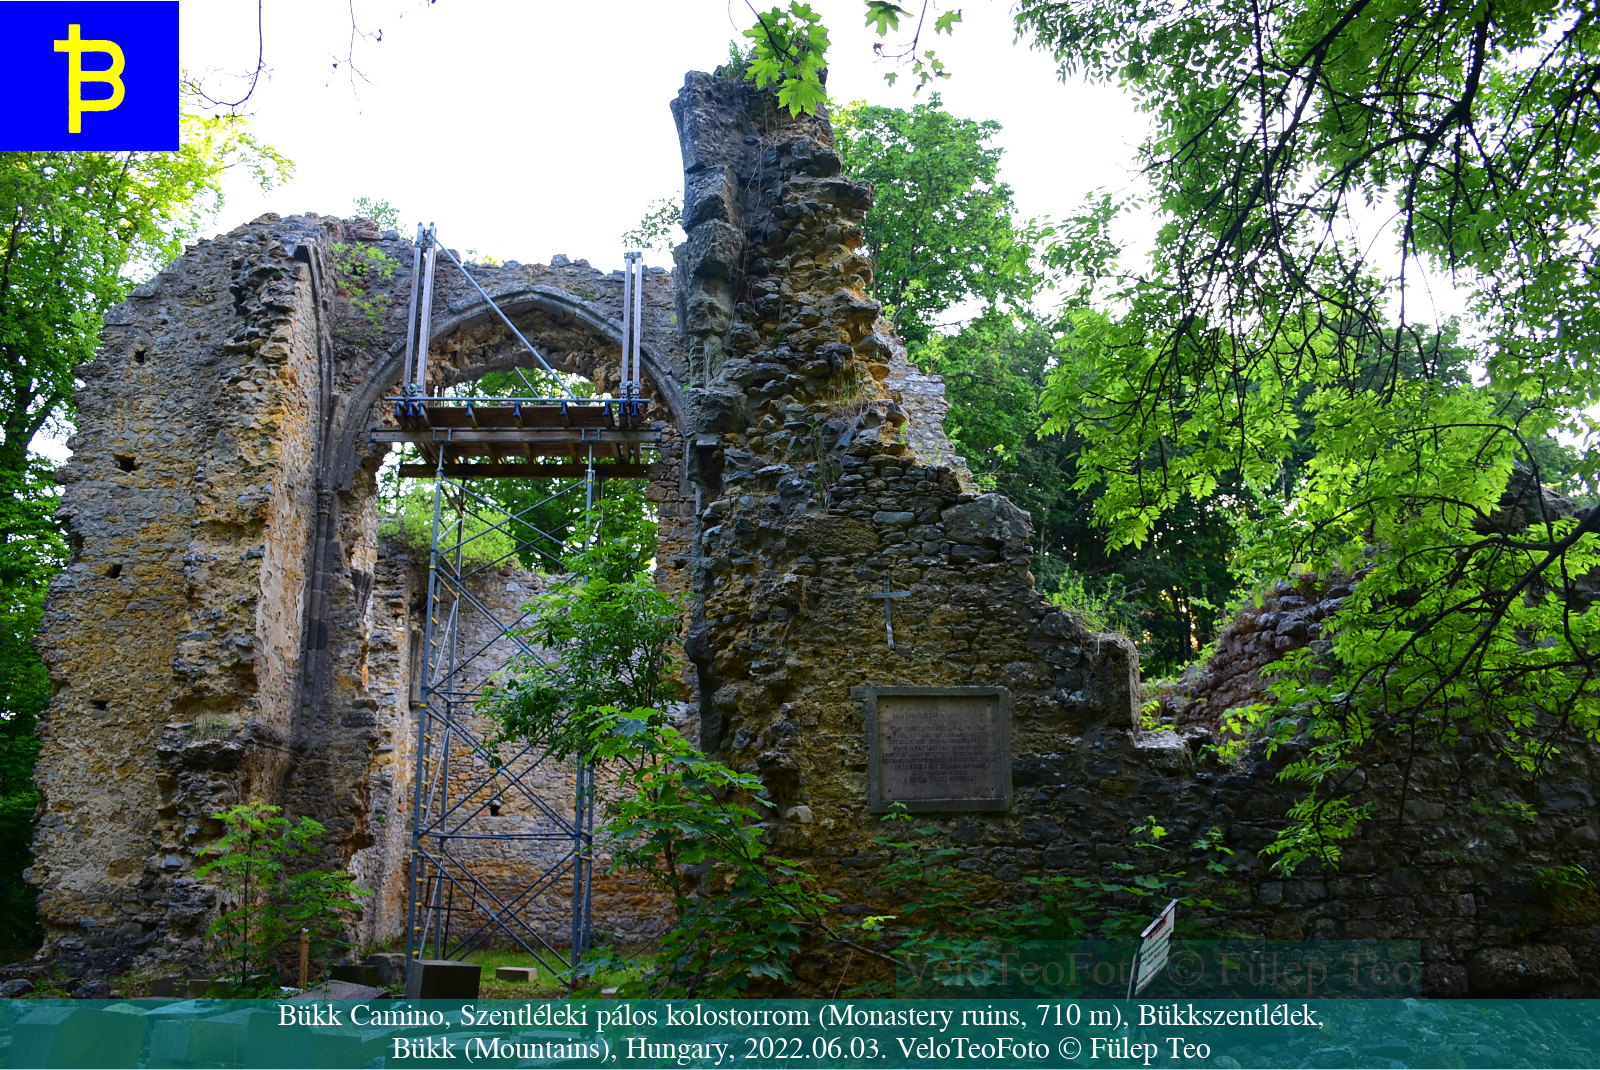 Szentléleki pálos kolostorrom, Bükk; Spirituális túra: Bükk Camino élménybeszámoló, Miskolc–Eger